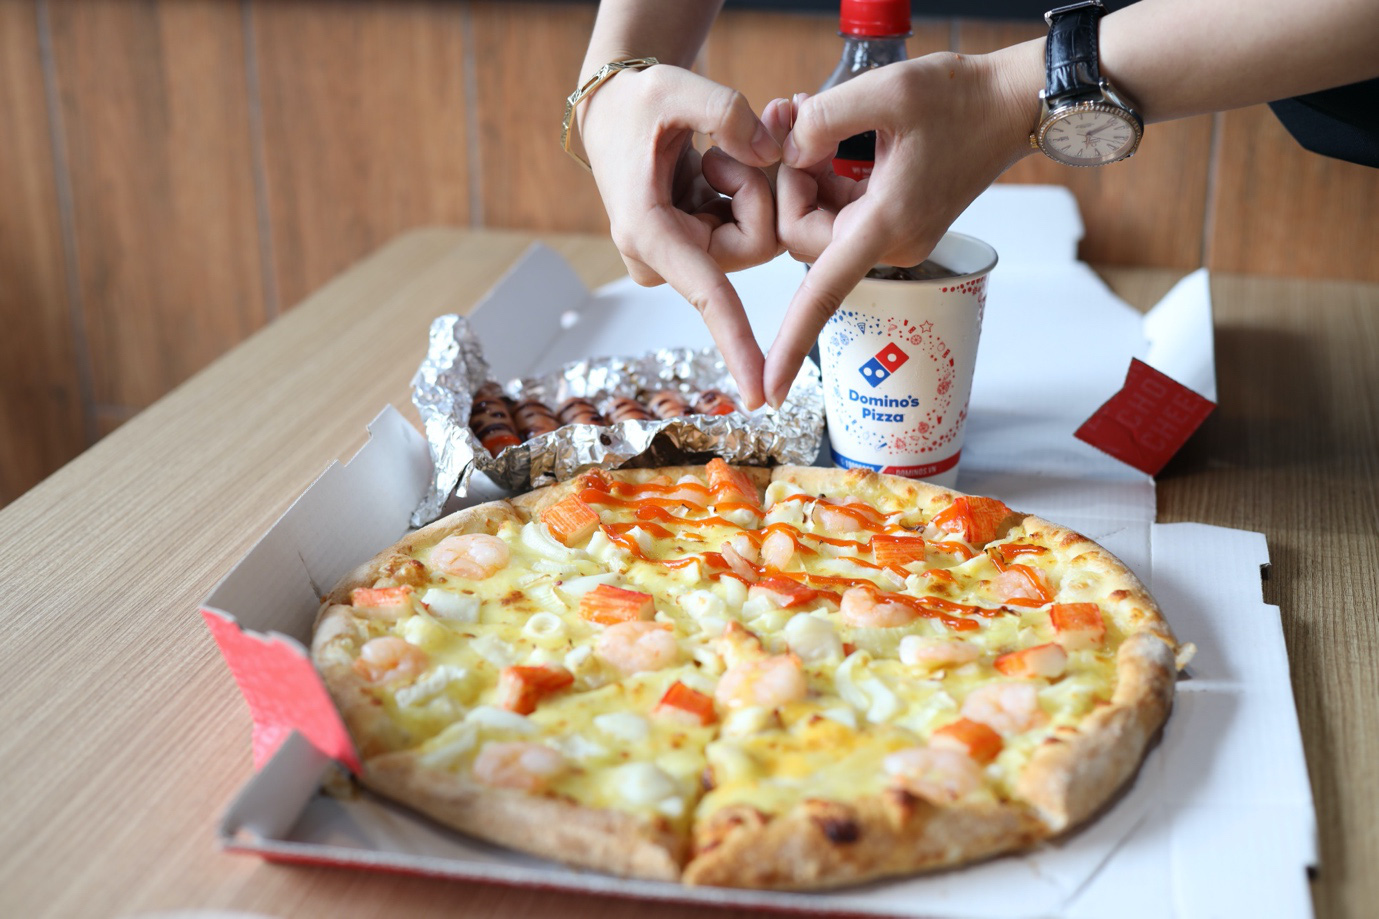 Domino’s – Thương hiệu Pizza hàng đầu thế giới đã “hạ cánh” tại Biên Hoà, đánh dấu sự phát triển chuỗi hệ thống Pizza Mỹ tại các tỉnh thành - Ảnh 6.